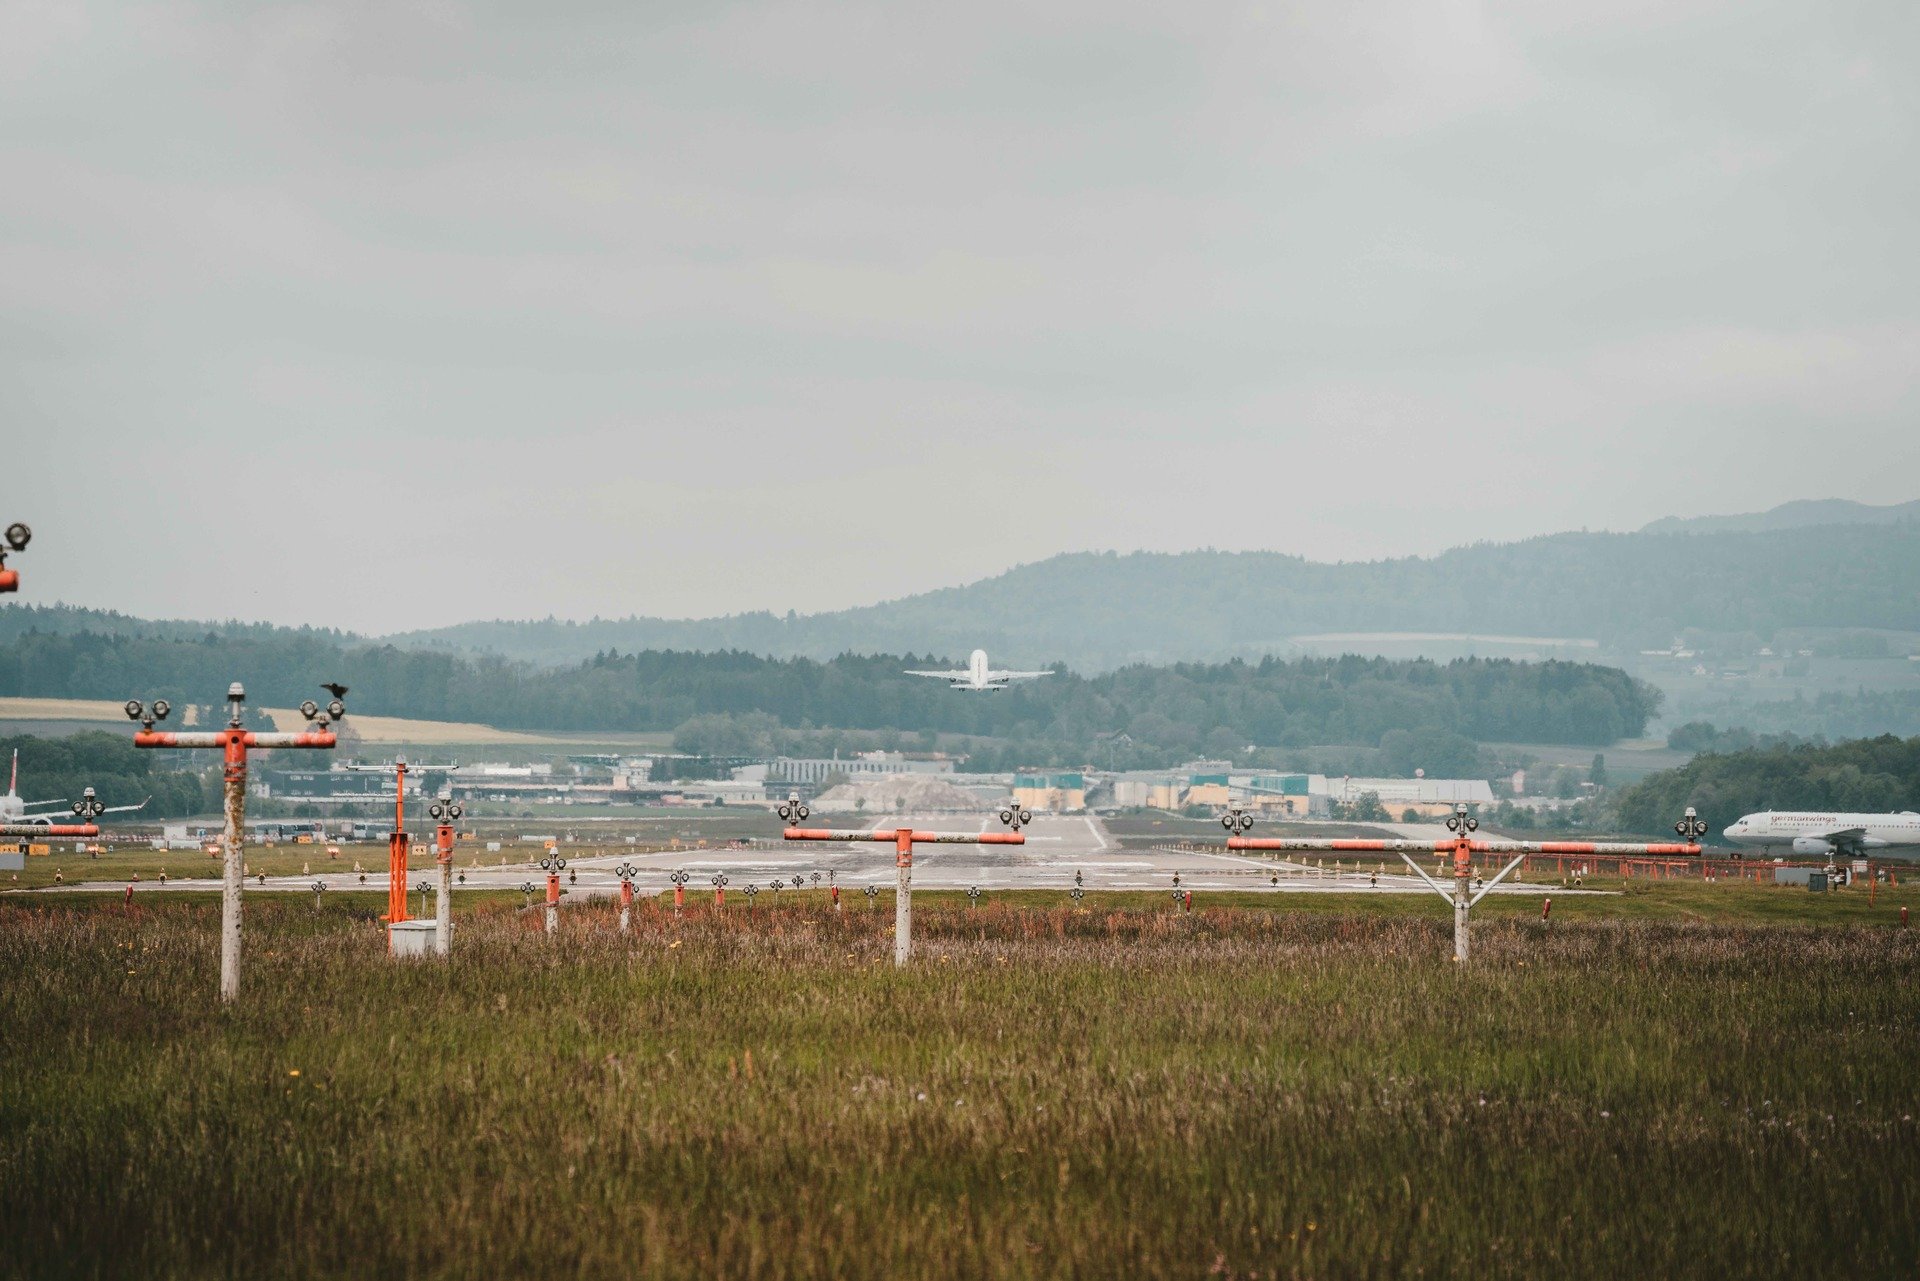 Flughafen-Ranking: Zürich auf Platz zwei der unpünktlichsten Flughäfen im DACH-Raum